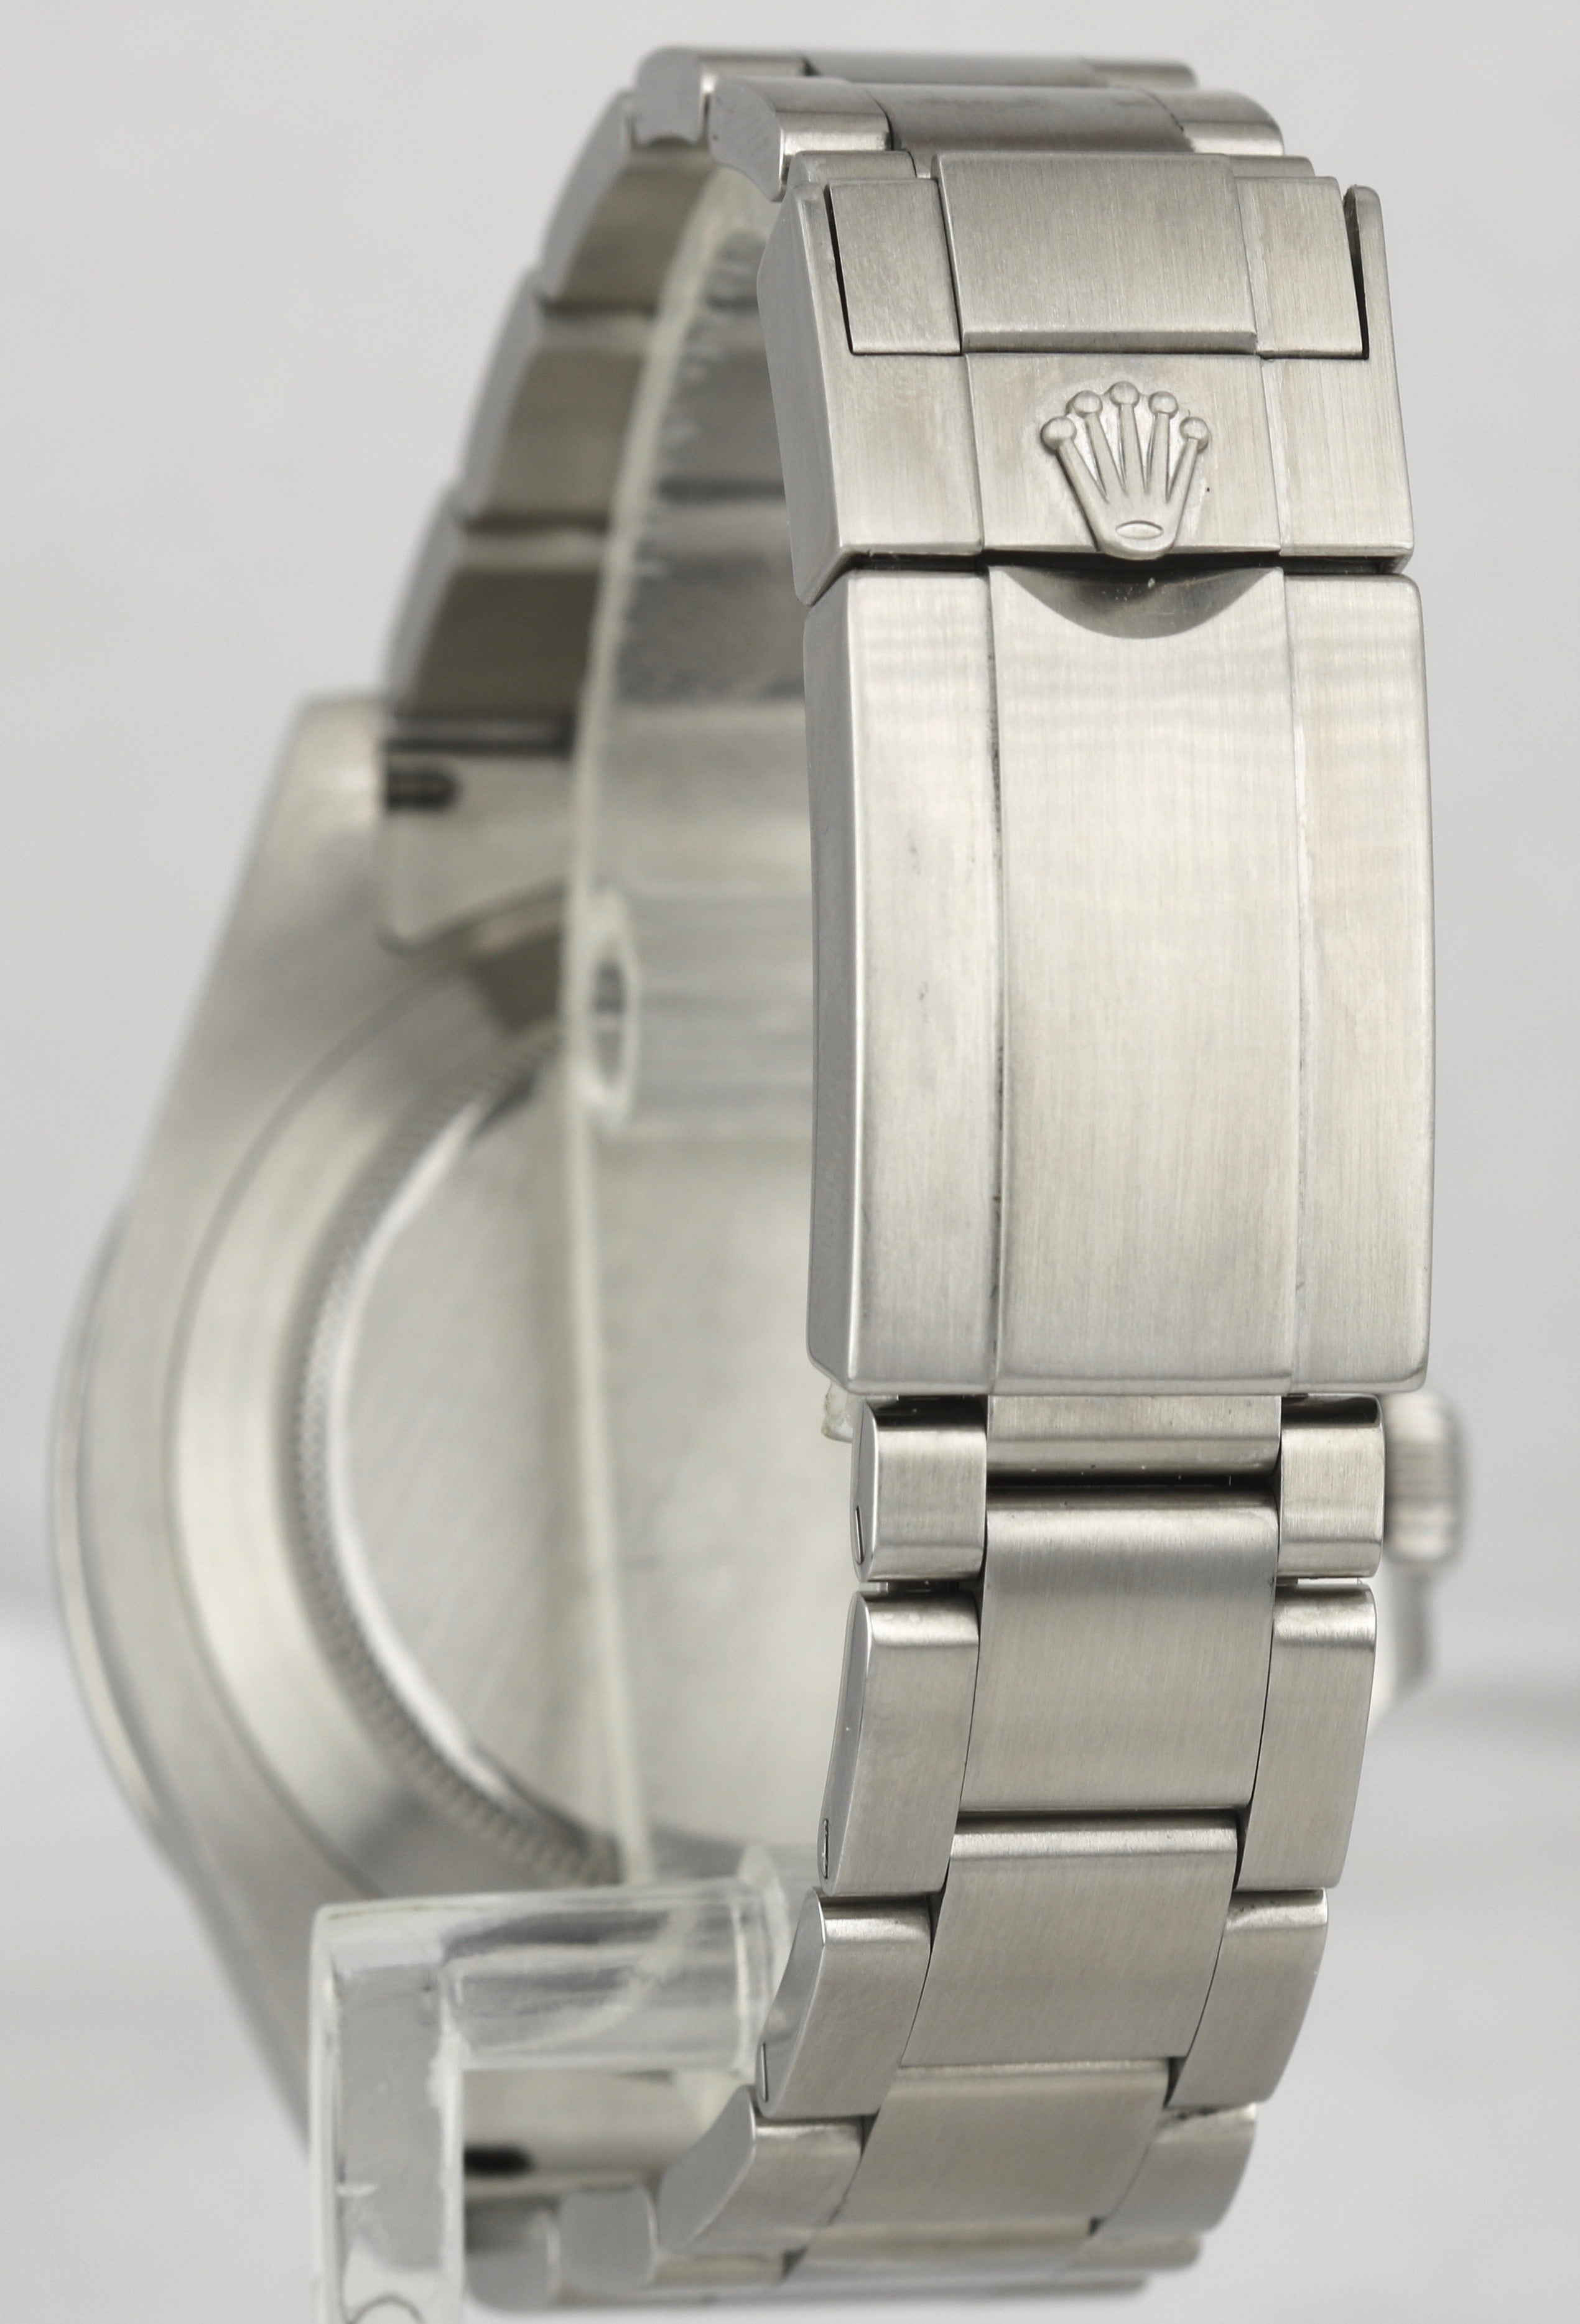 Men's Rolex Explorer II 42mm White Orange Stainless Steel GMT Date Watch 216570